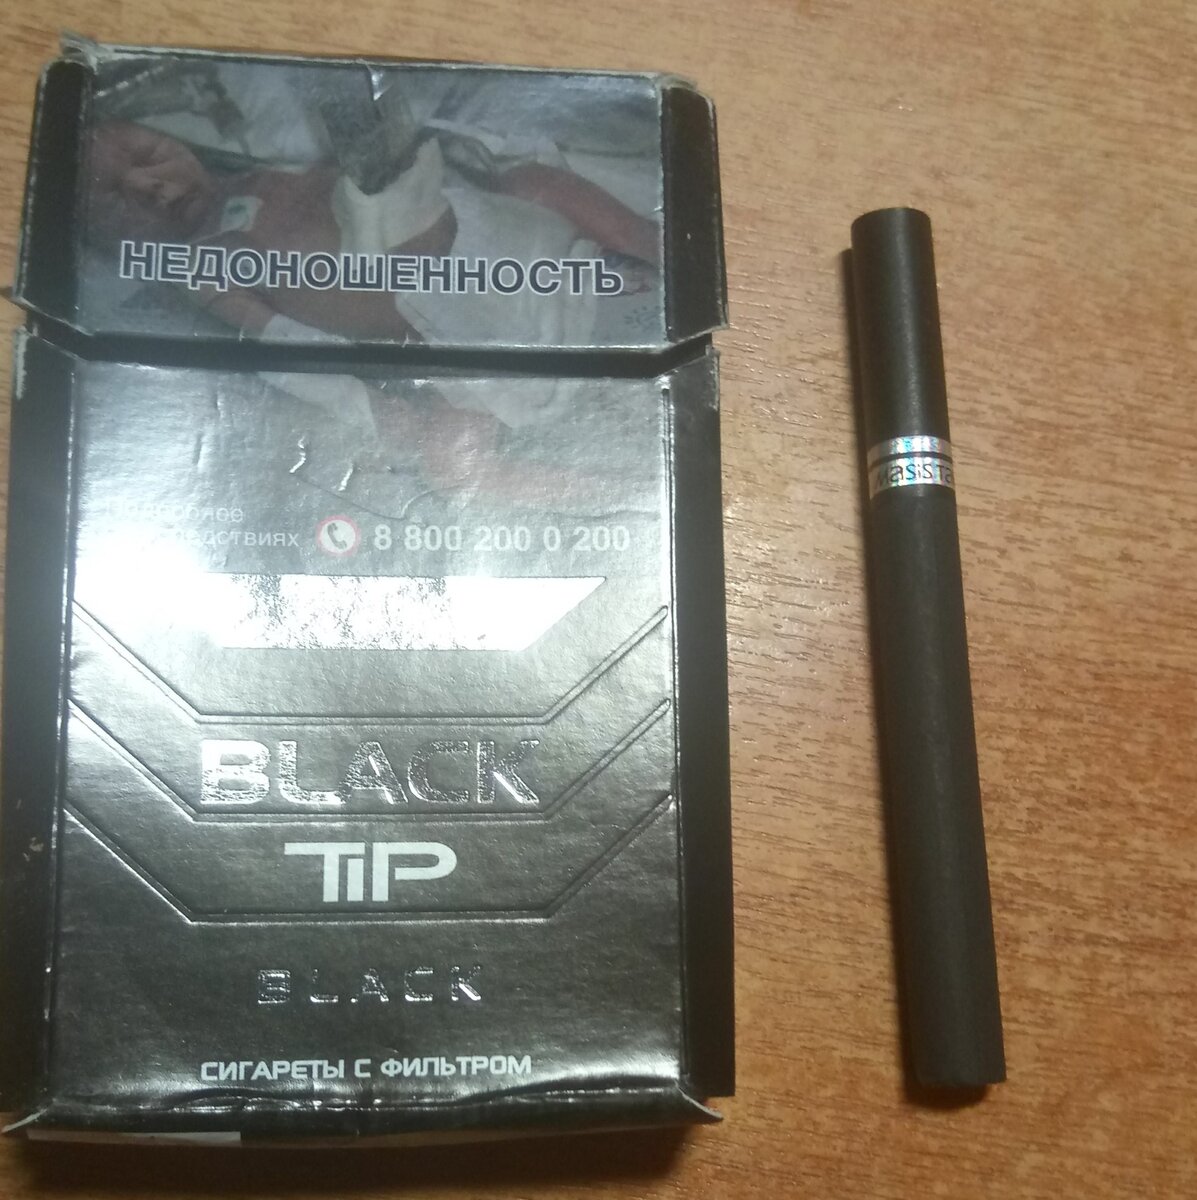 Сигареты в черной пачке